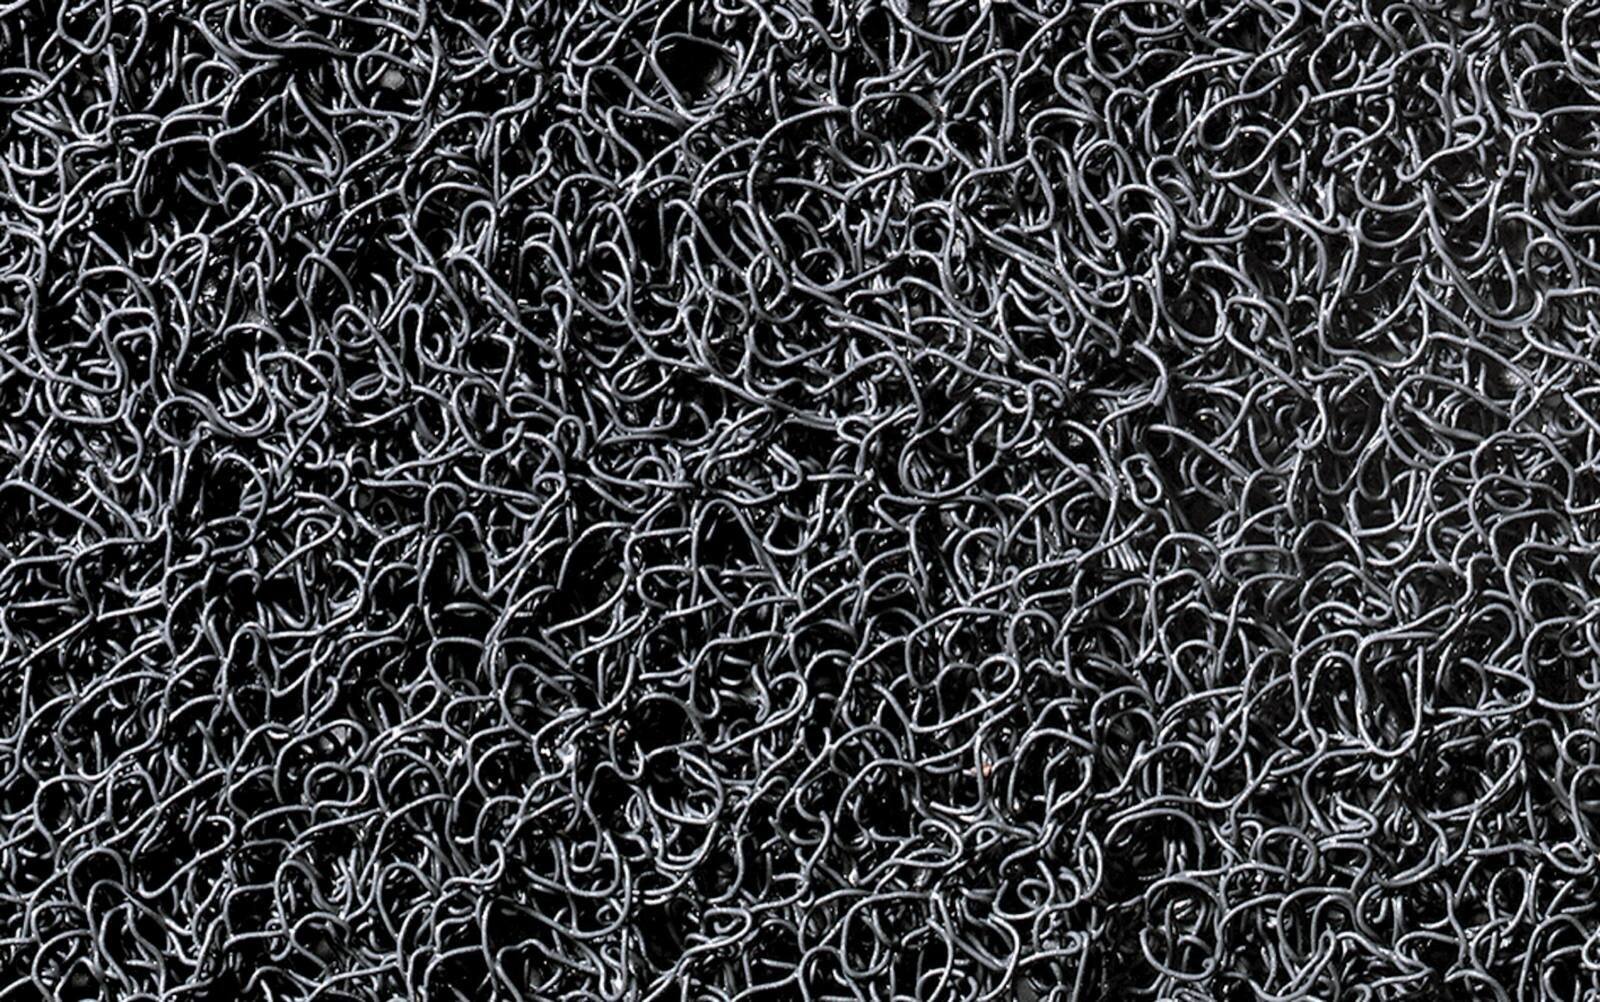 3M Tapis de propreté Nomad Terra 6850, gris, 6m x 1,2m